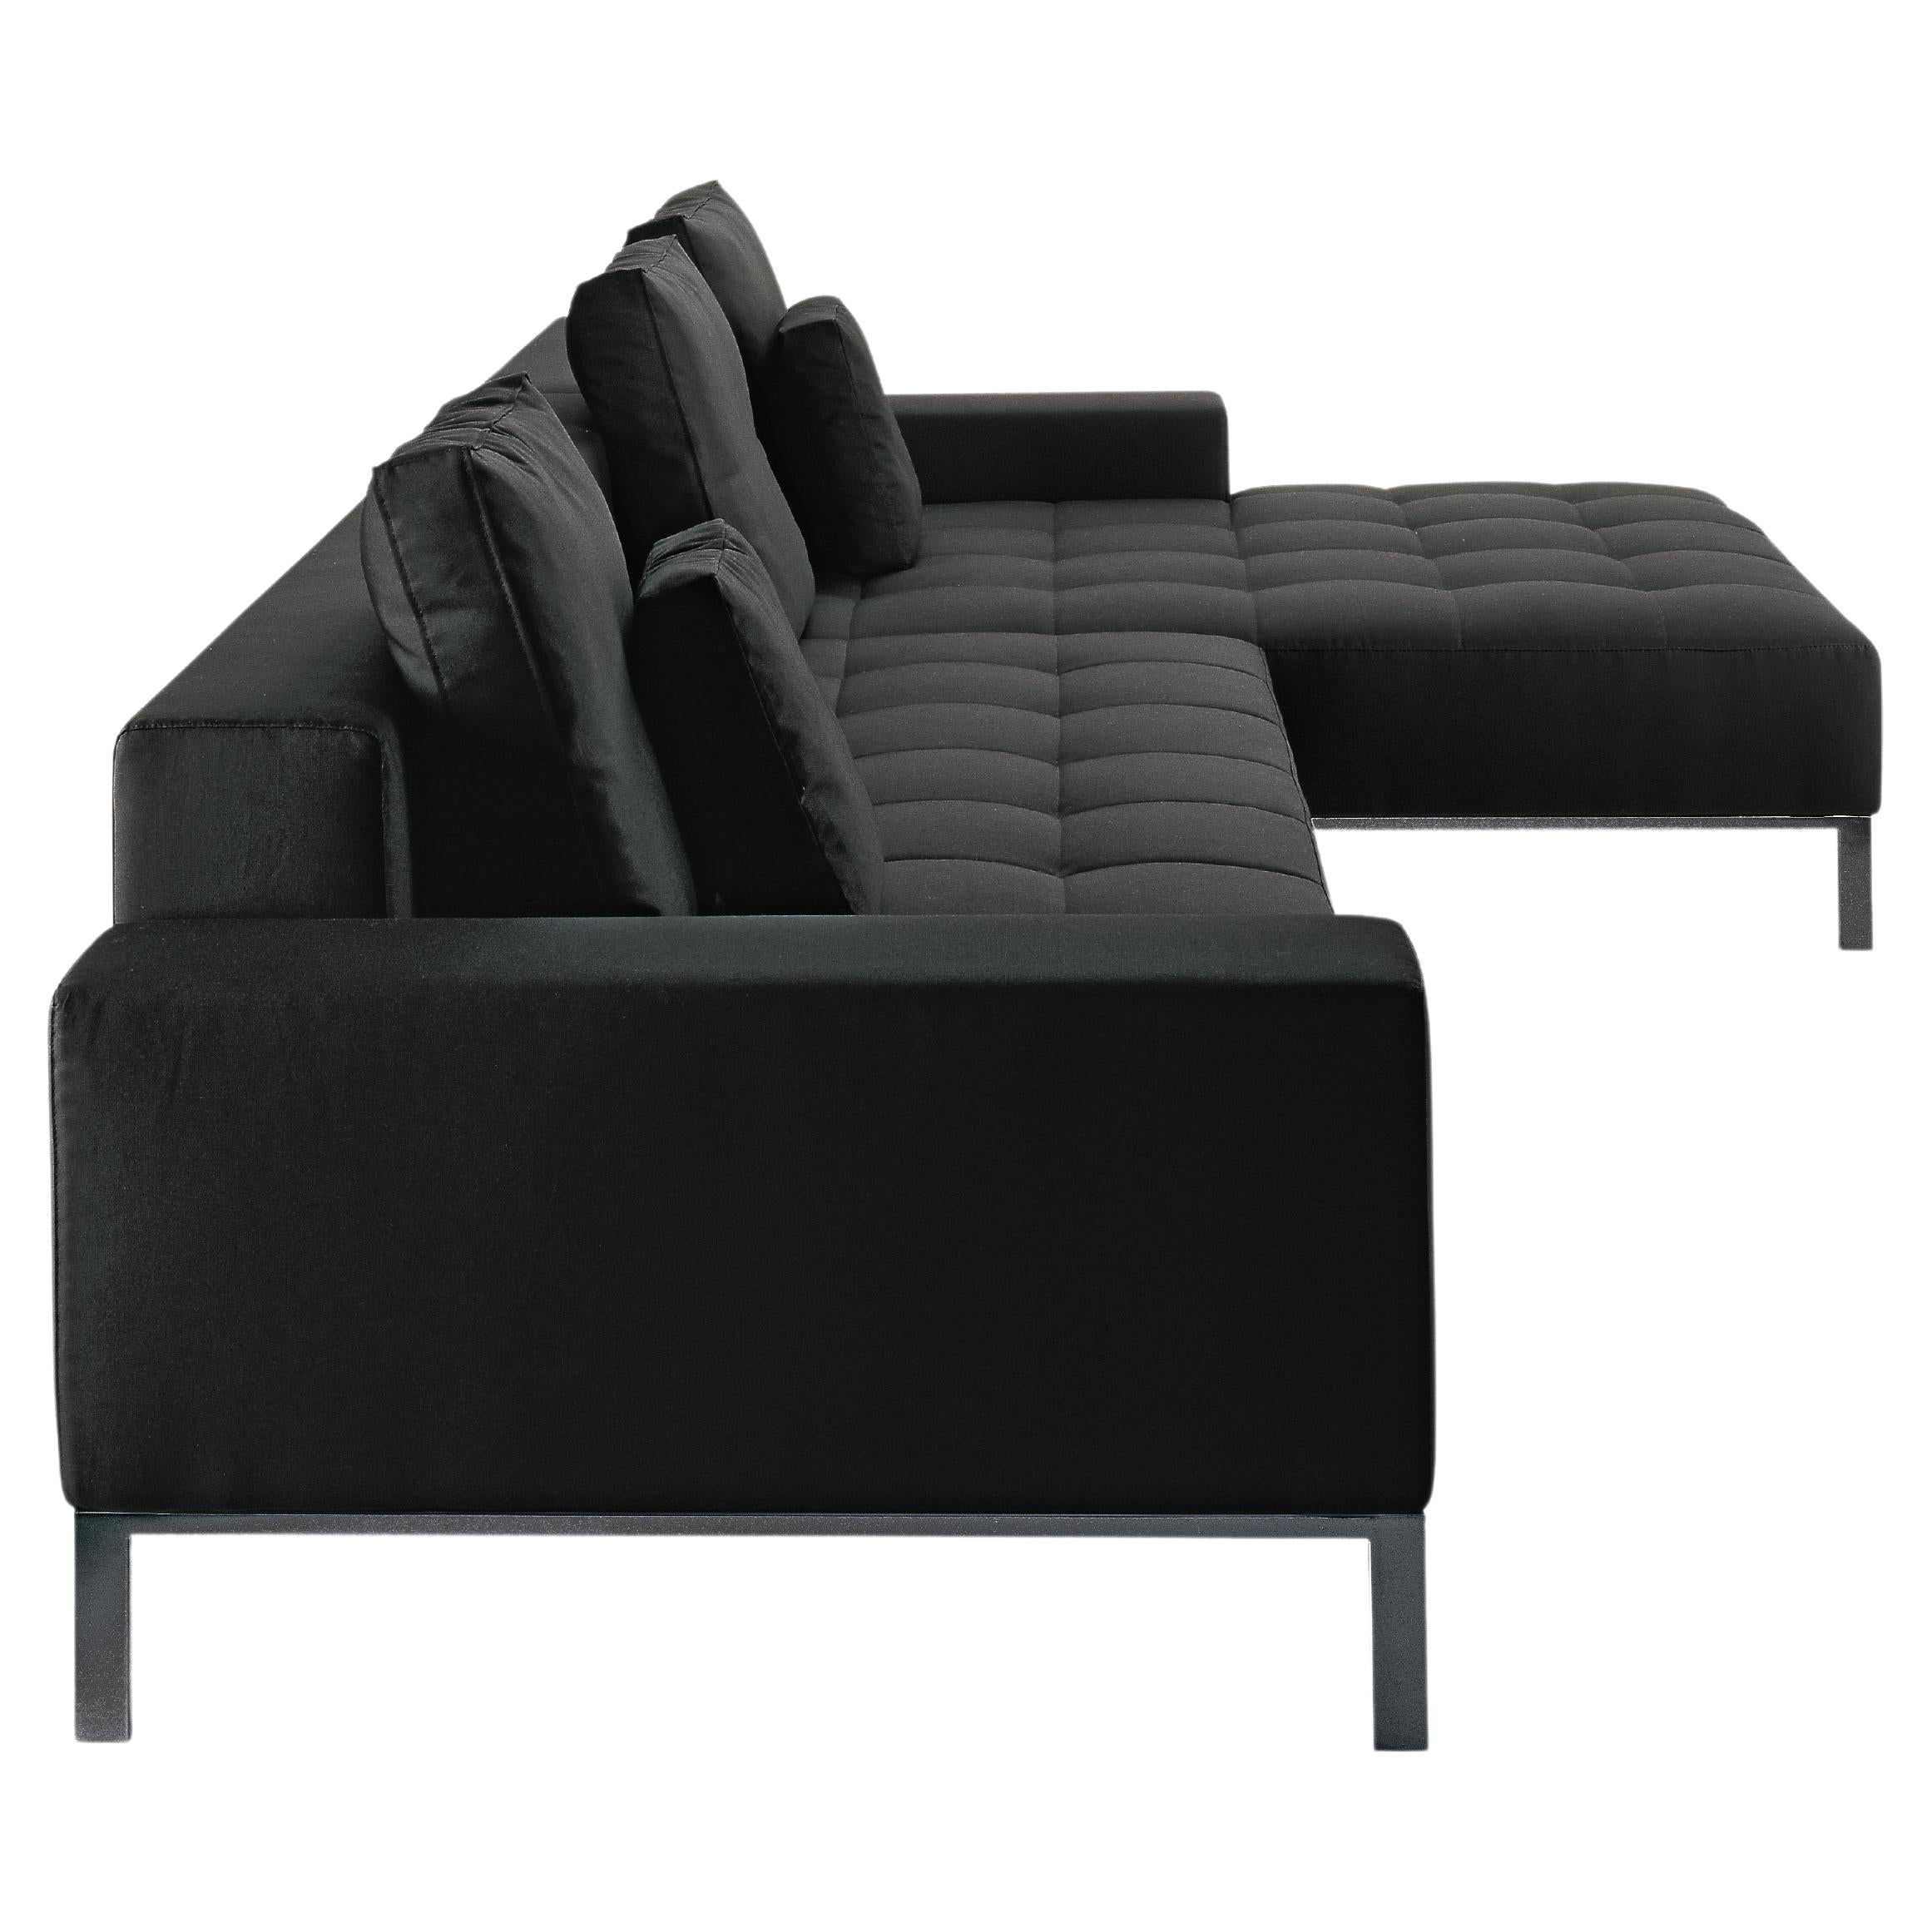 Canapé modulaire Zanotta Alfa en tissu Vico avec cadre en acier noir par Emaf Progetti